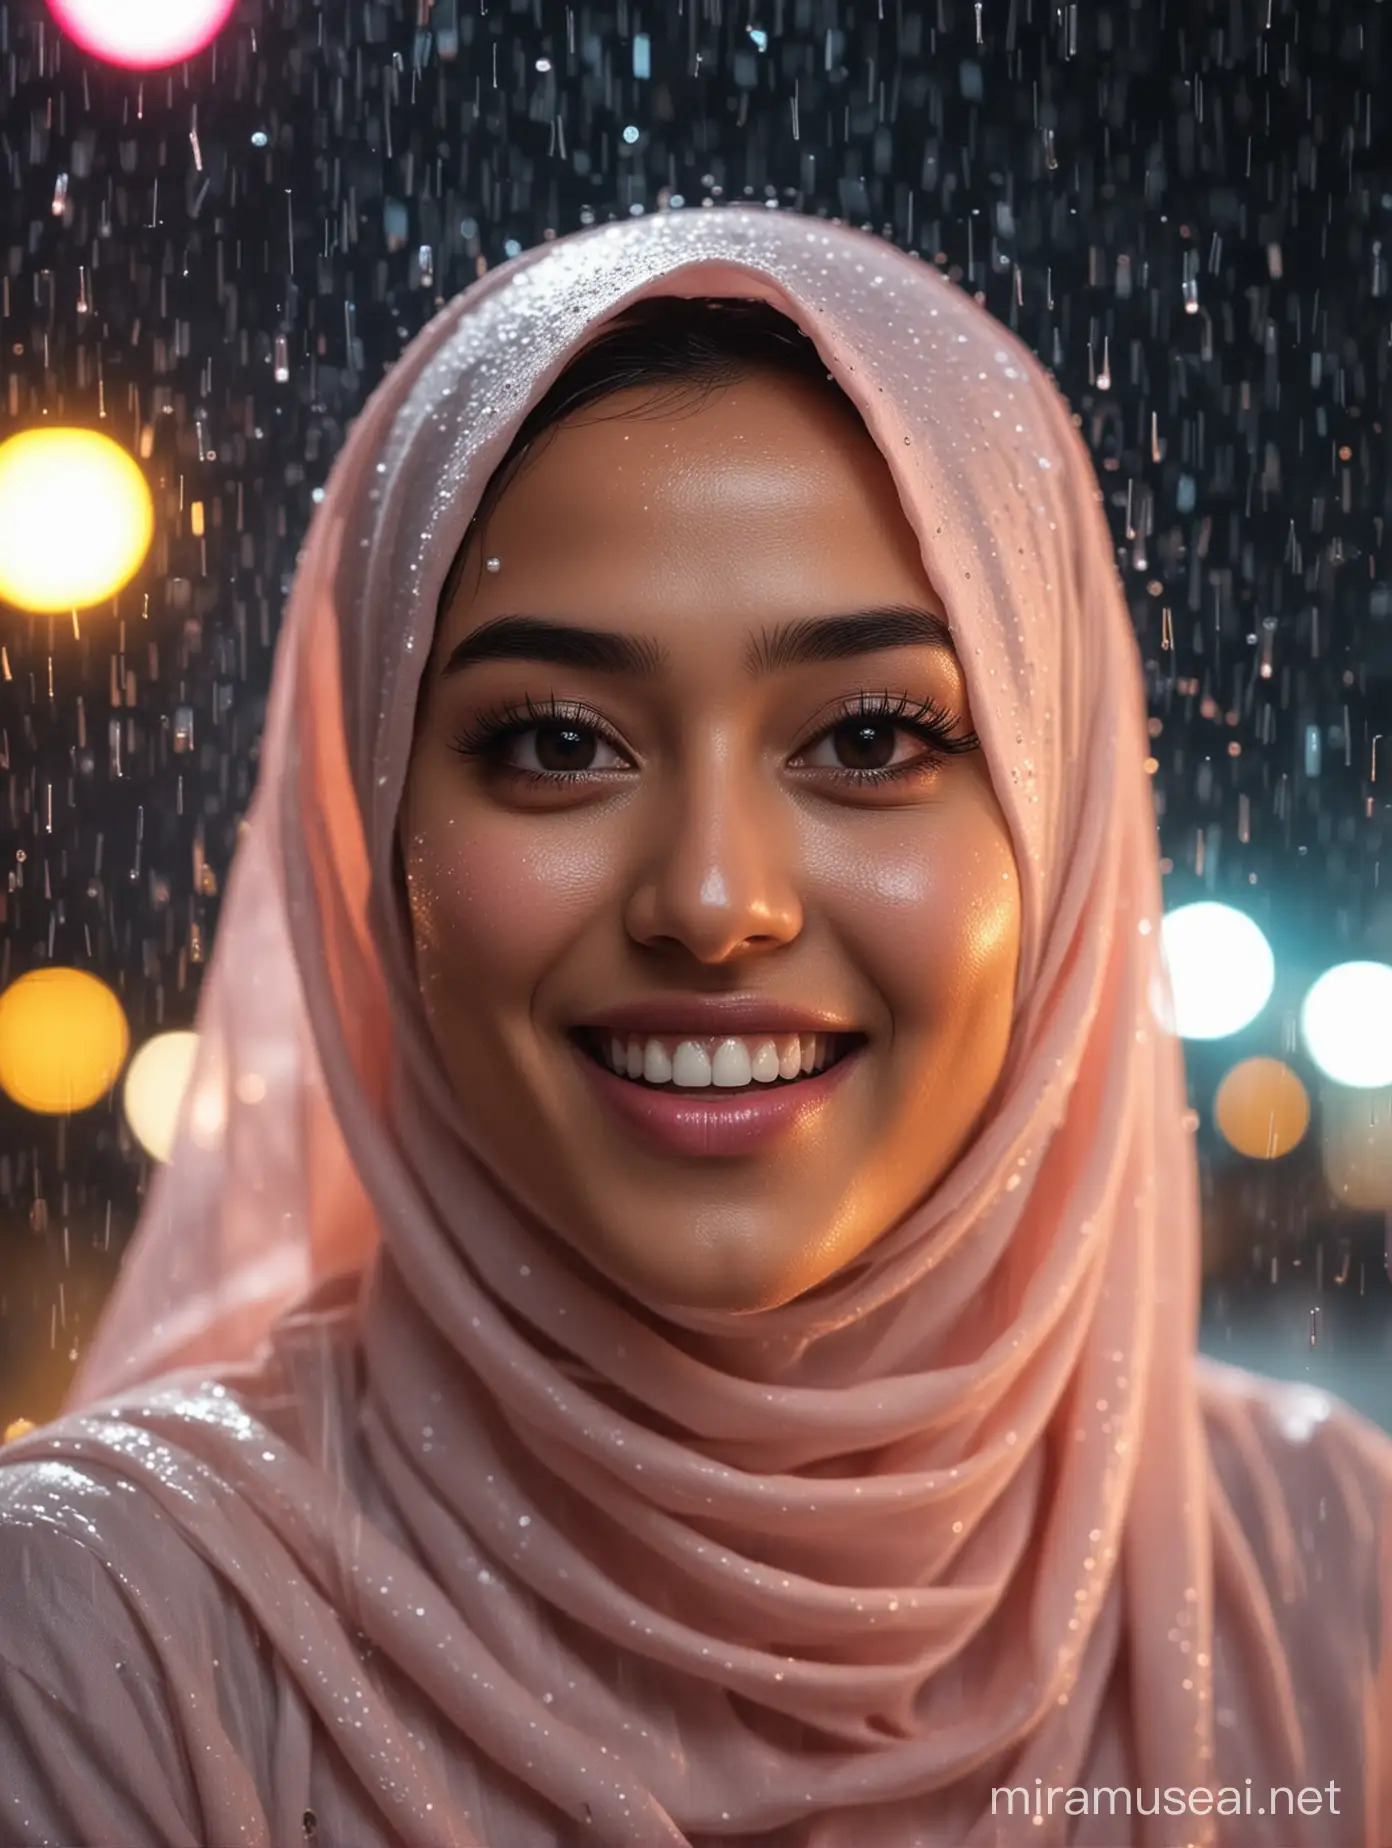 Joyful Indonesian Hijab Woman Dancing in Rainy Night Town